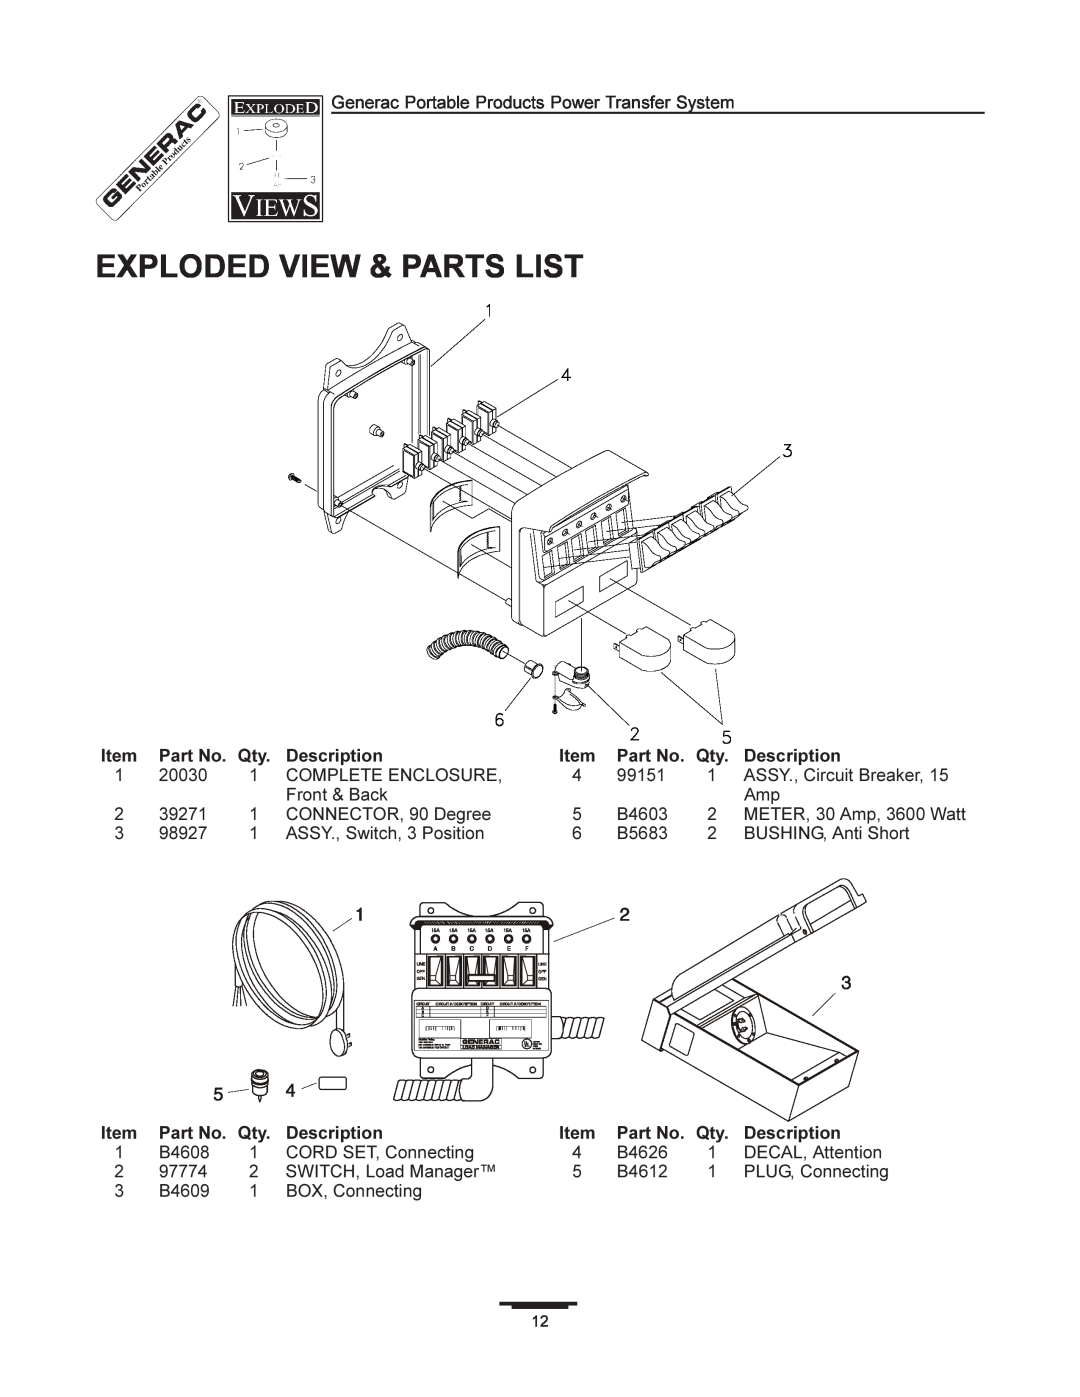 Generac 1403-0 manual Exploded View & Parts List, Description 